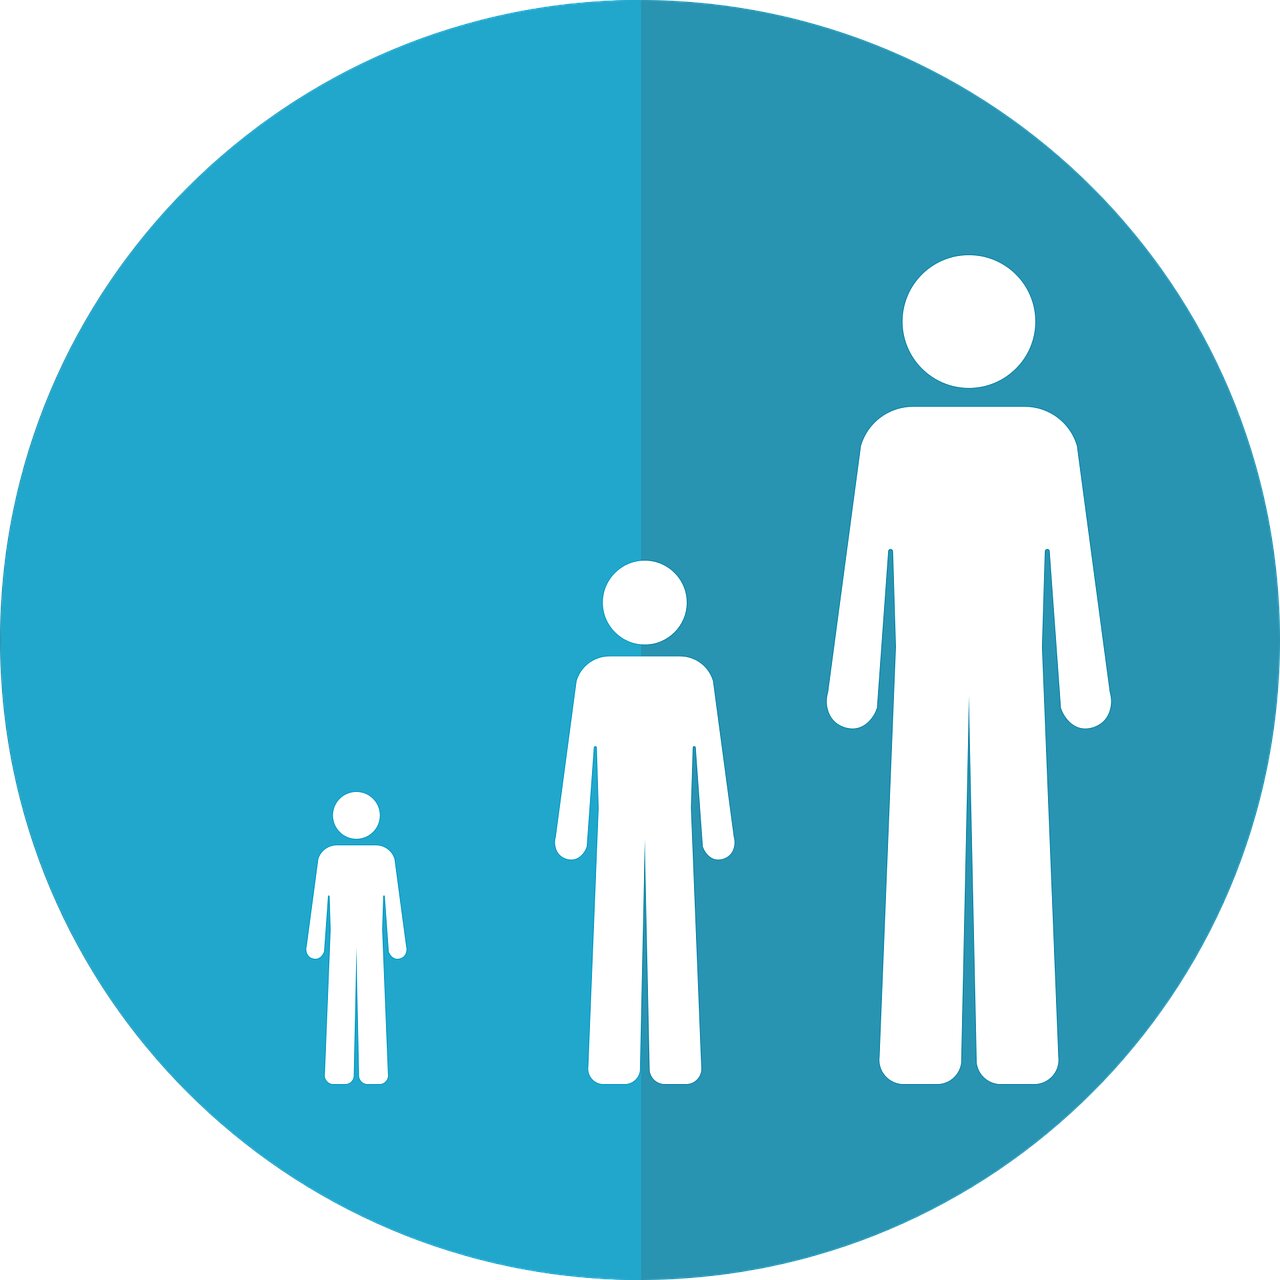 La imagen muestra un icono con tres figuras humanas de distinto tamaño que representan las etapas de la vida.